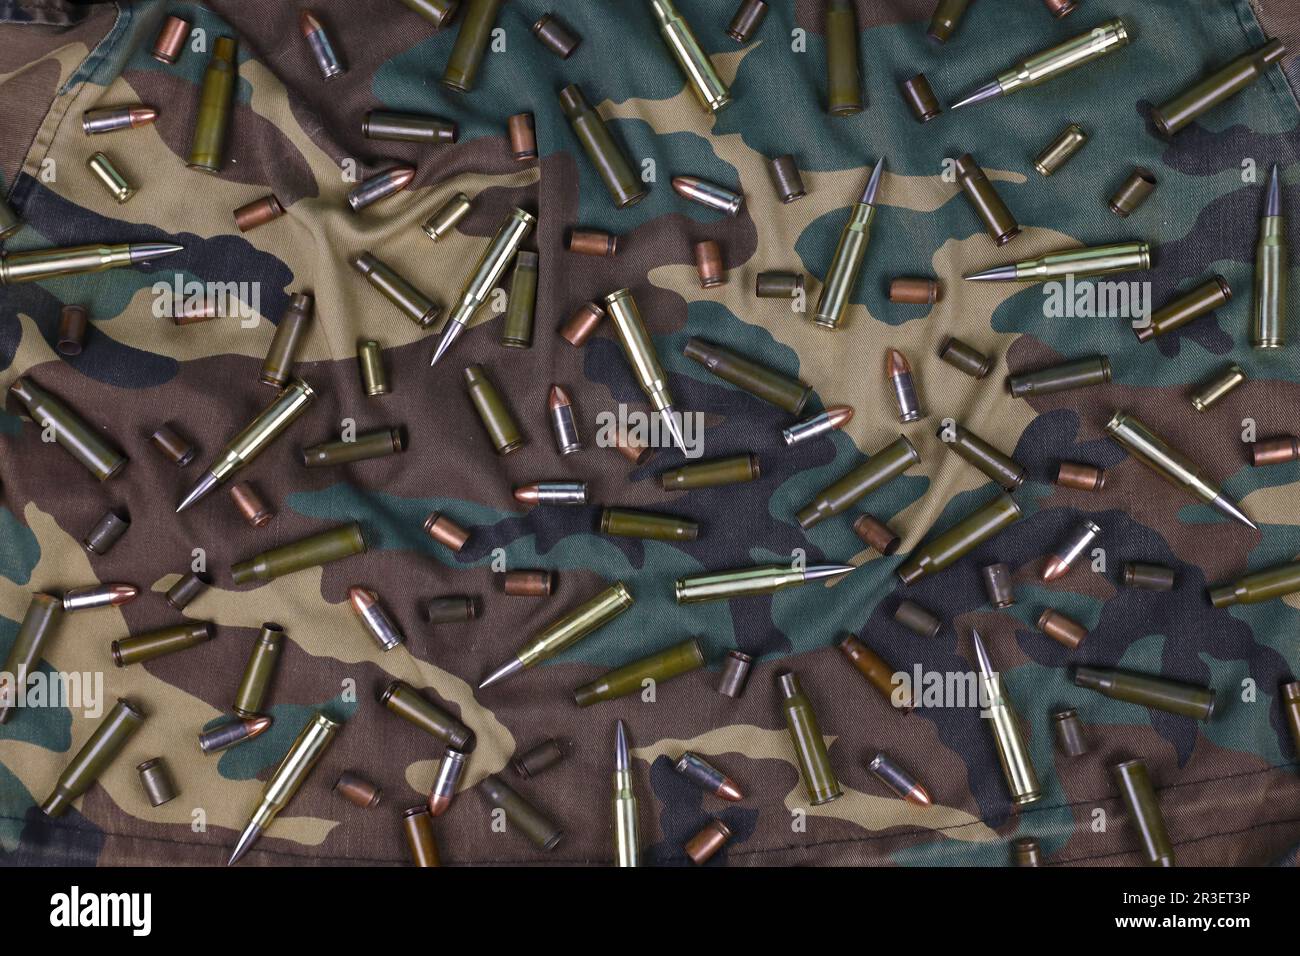 De nombreuses balles et cartouches de fusil sur fond de camouflage foncé. Concept d'action de guerre ou de chasse Banque D'Images